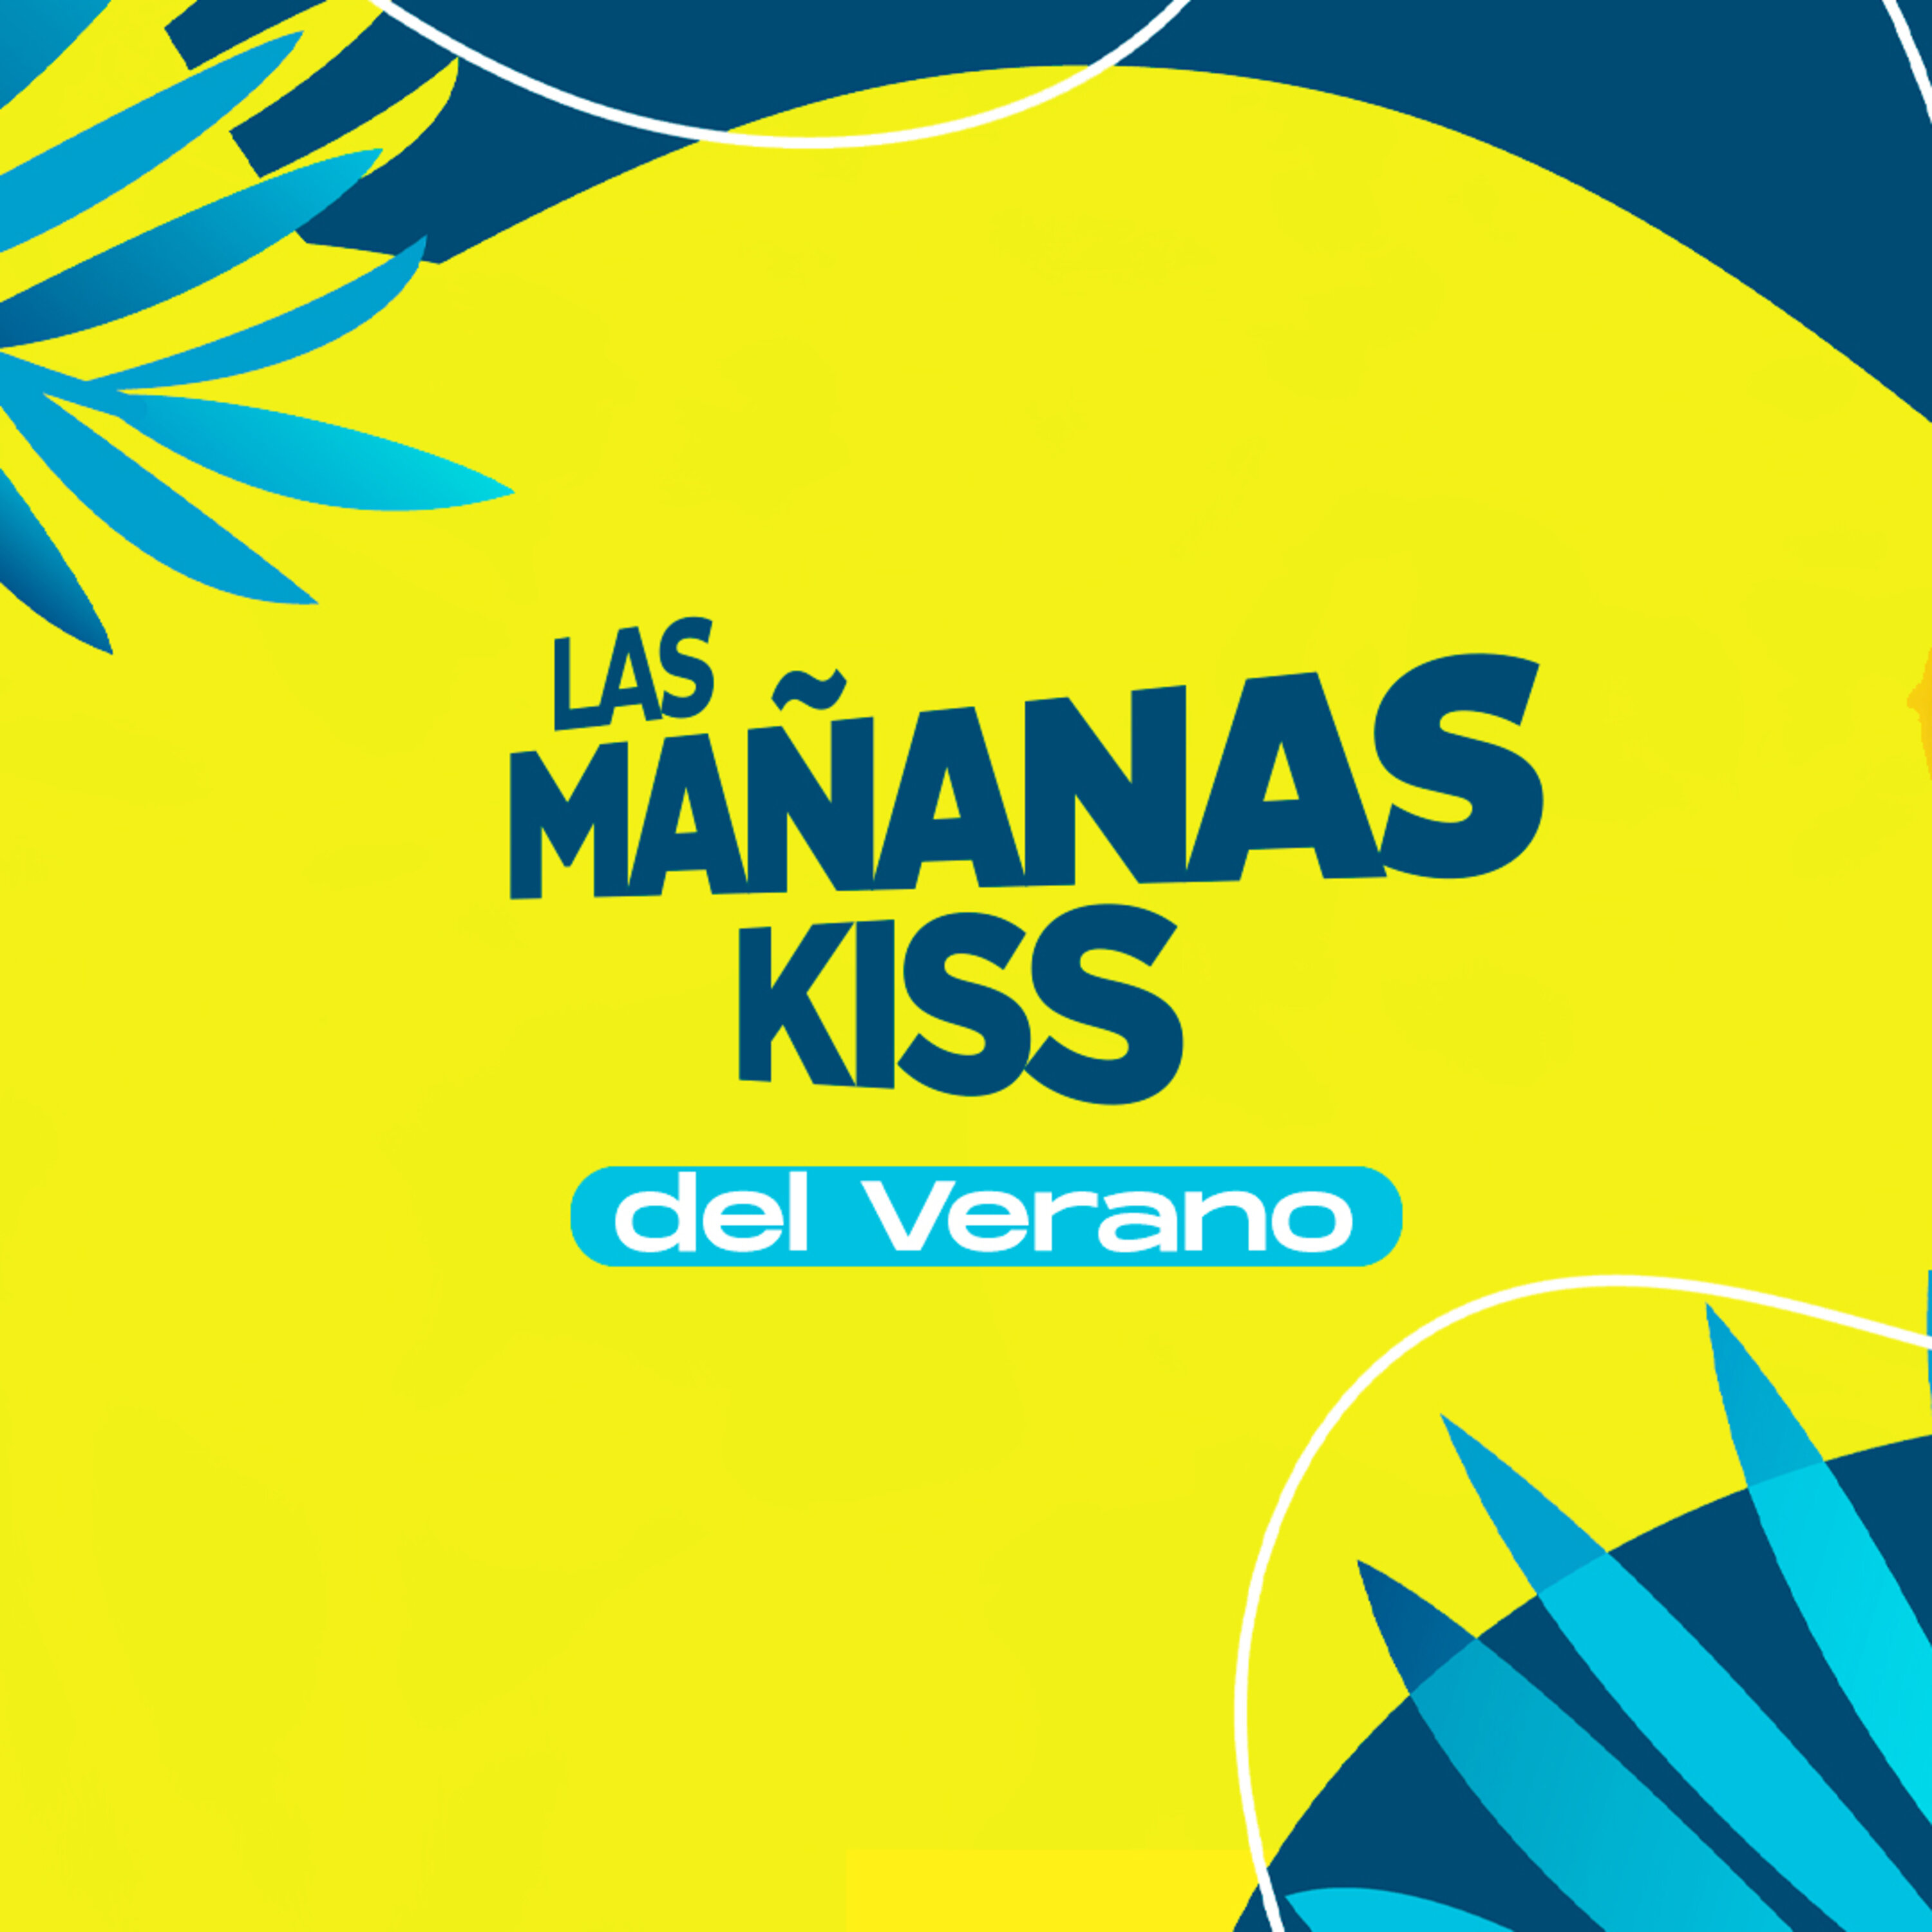 Las Mañanas KISS del Verano (10/08/2022 - 08-09h)